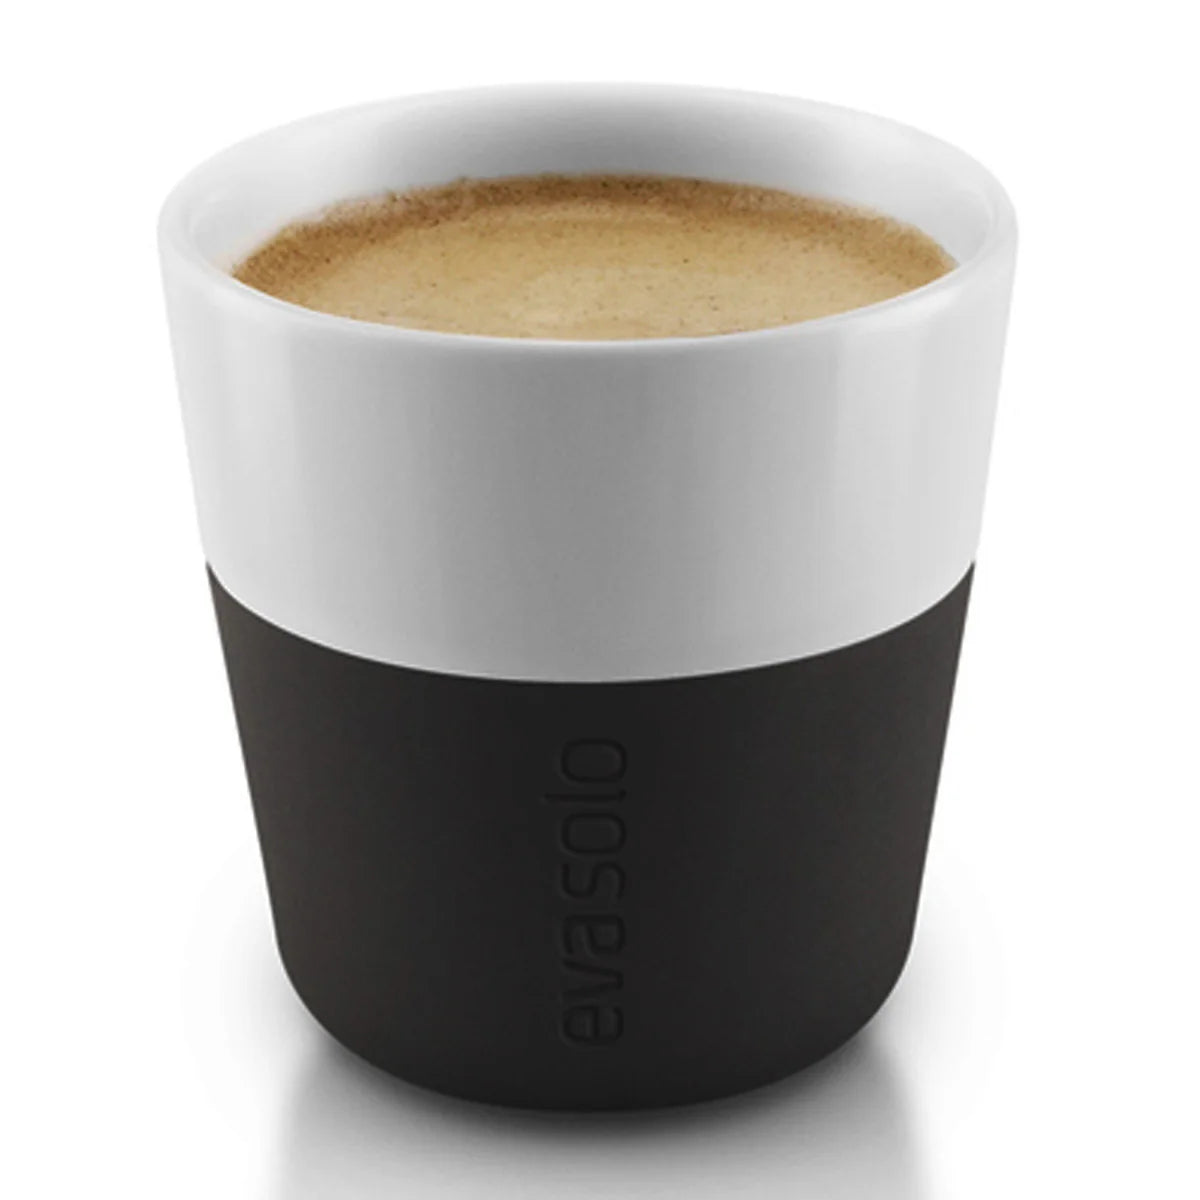 Eva Solo: Coffee Tumbler Espresso (2pcs) - Black